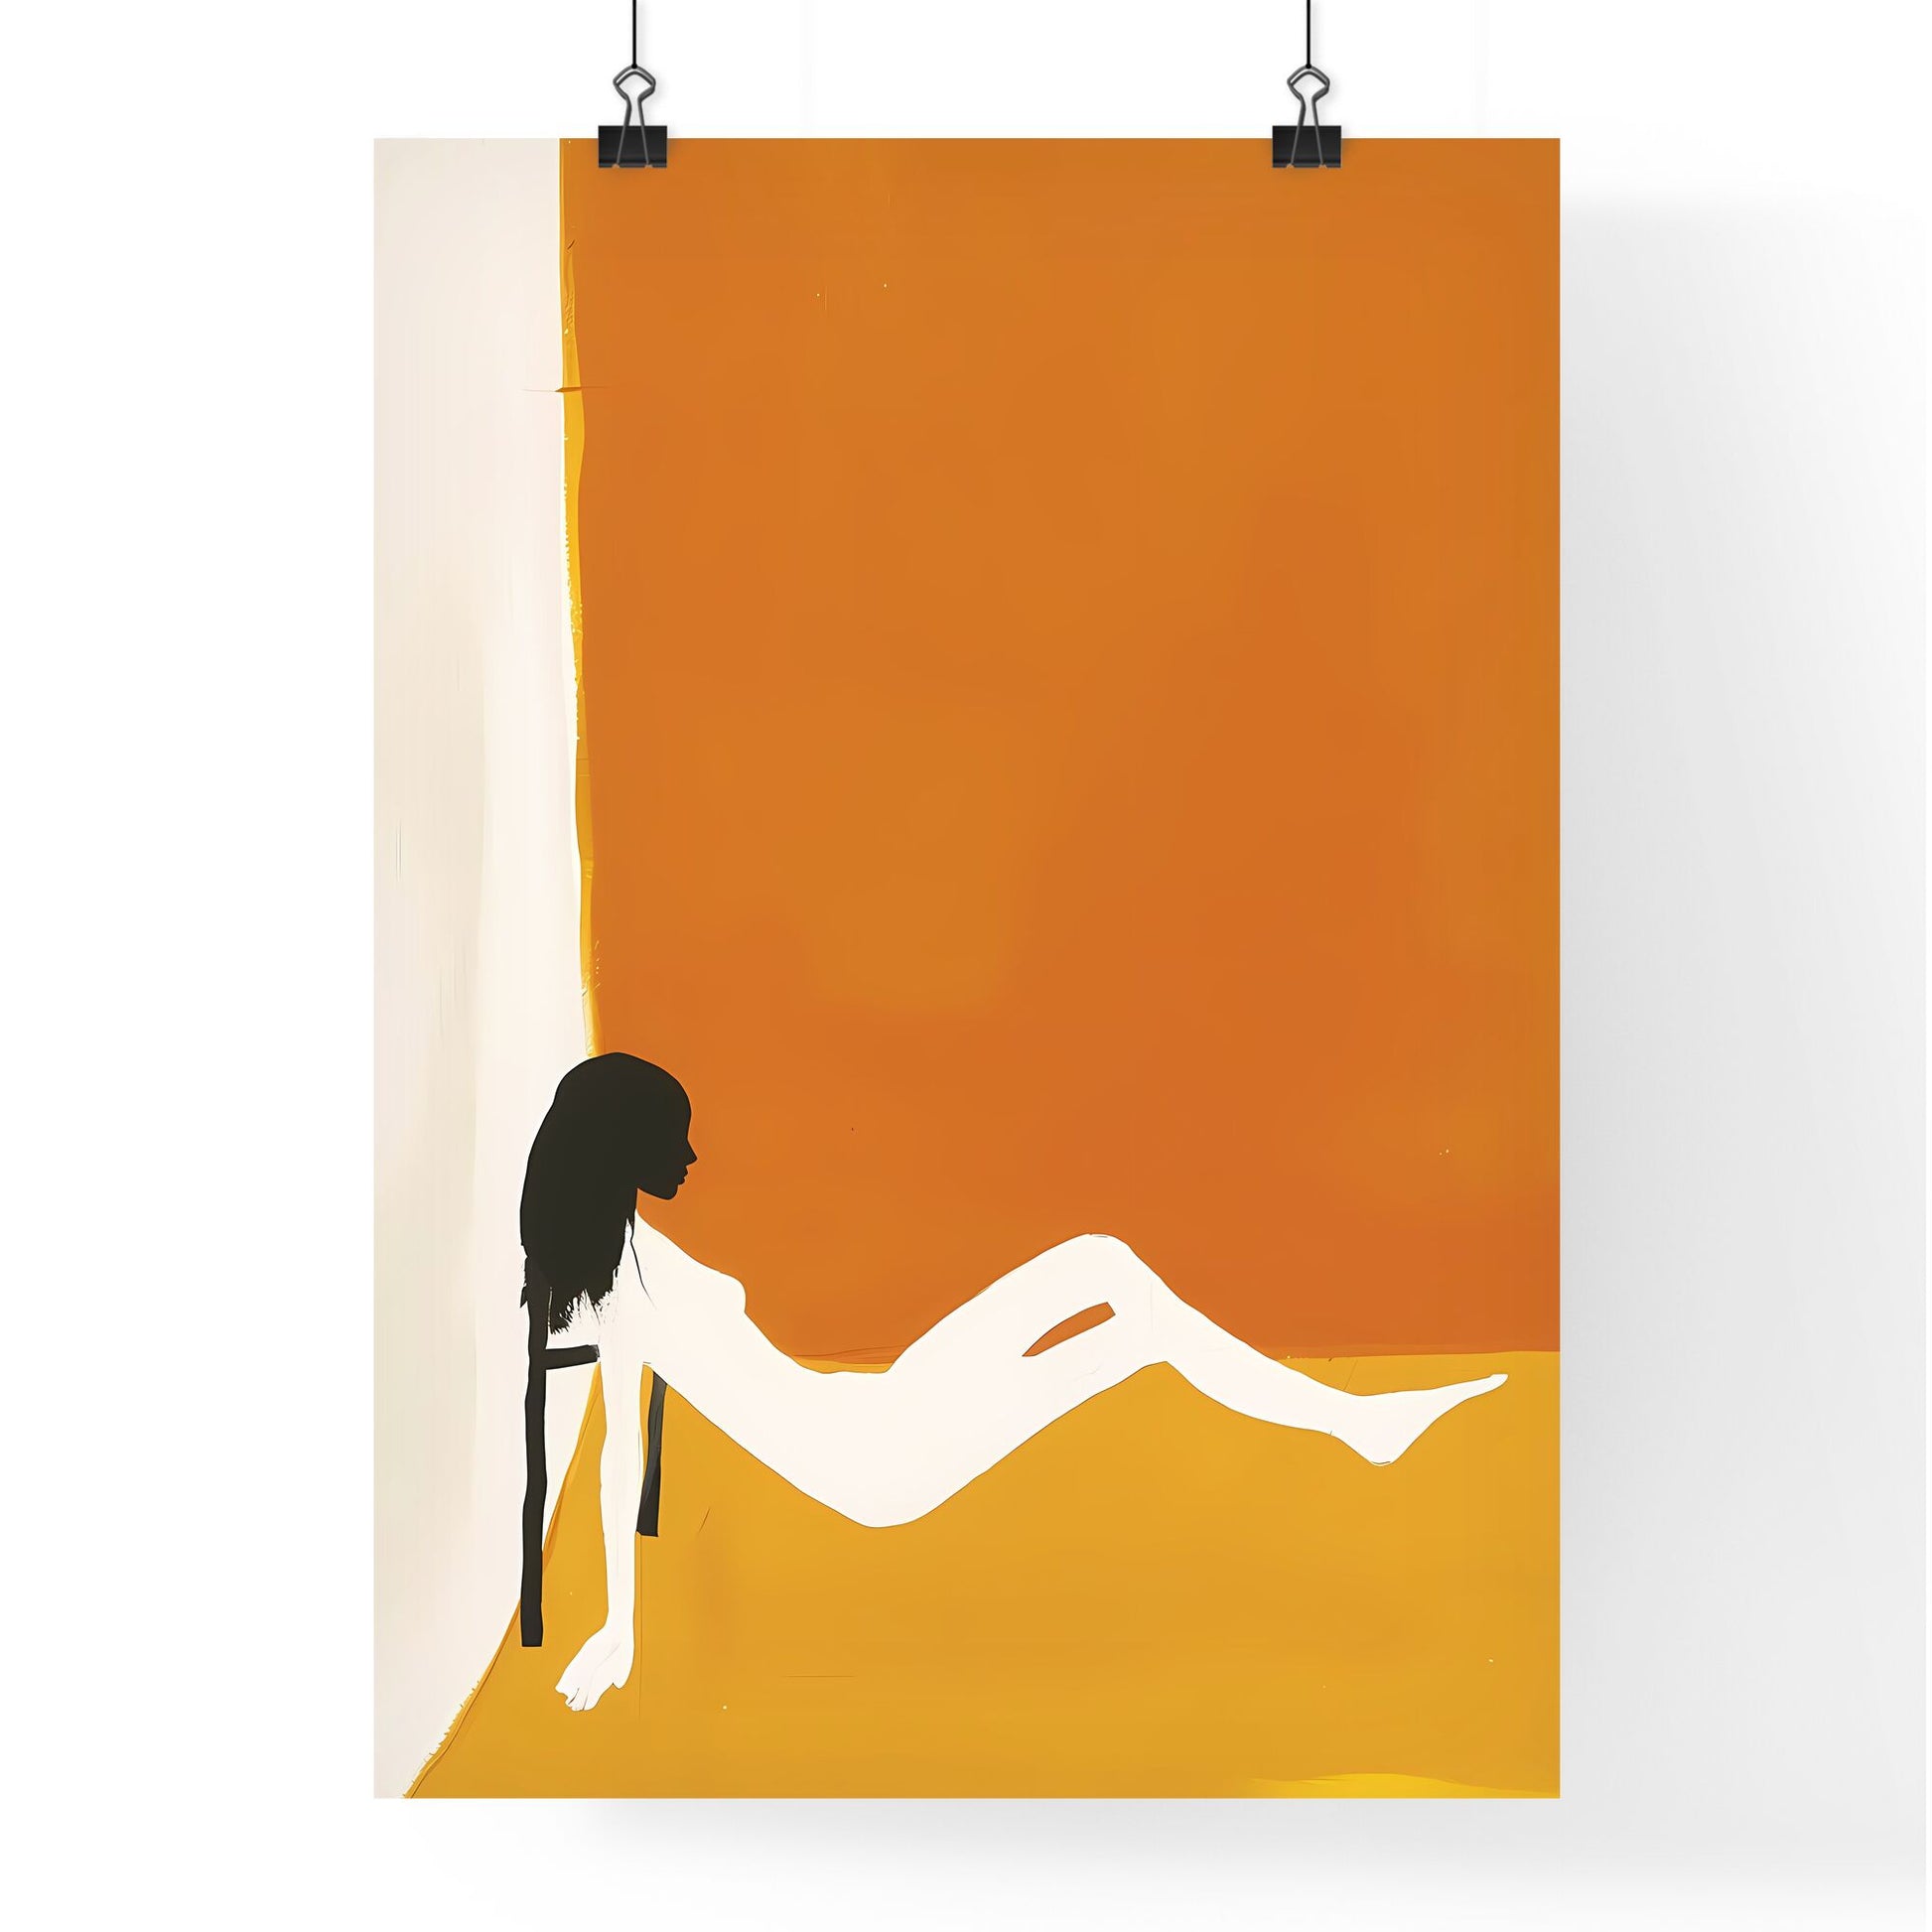 Vibrant Papier Couché Art Poster: Minimalistic Art Fauvism Simplicity - Woman on Chair Default Title